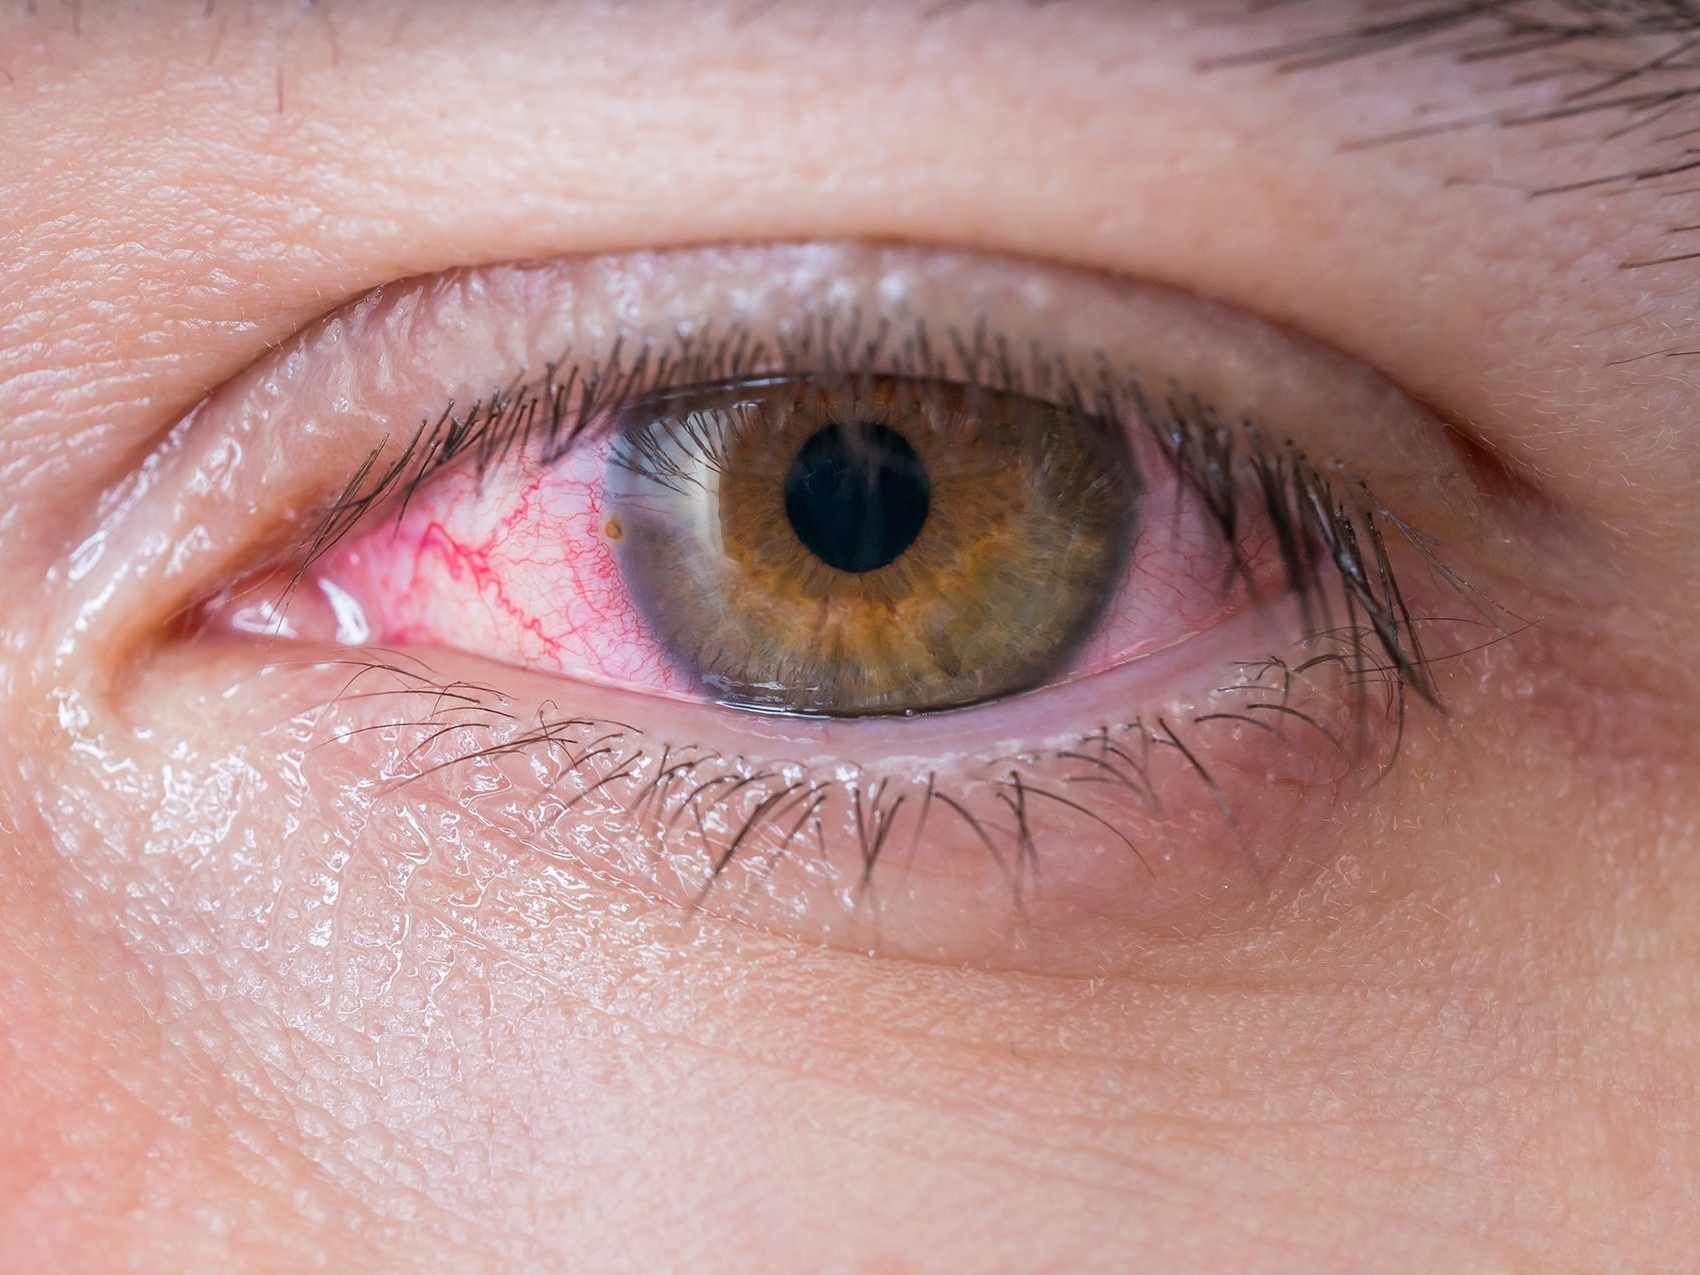 Die Abbildung zeigt eine Nahaufnahme eines erkrankten Auges und veranschaulicht mögliche Gefahren. 